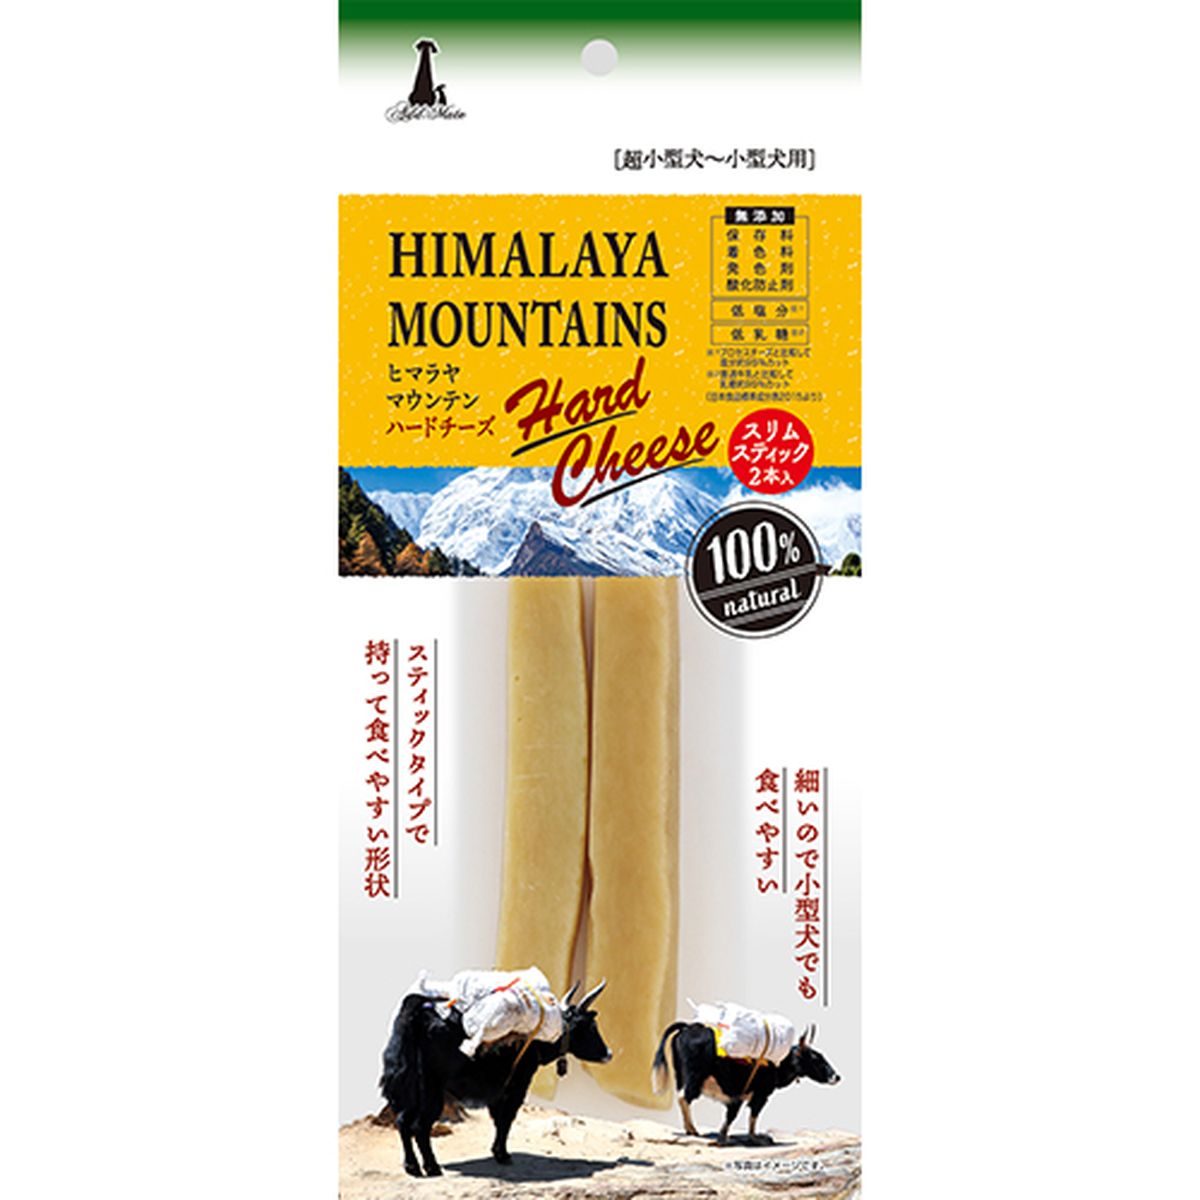 ヒマラヤマウンテンハードチーズ スリムスティック 2本入×30